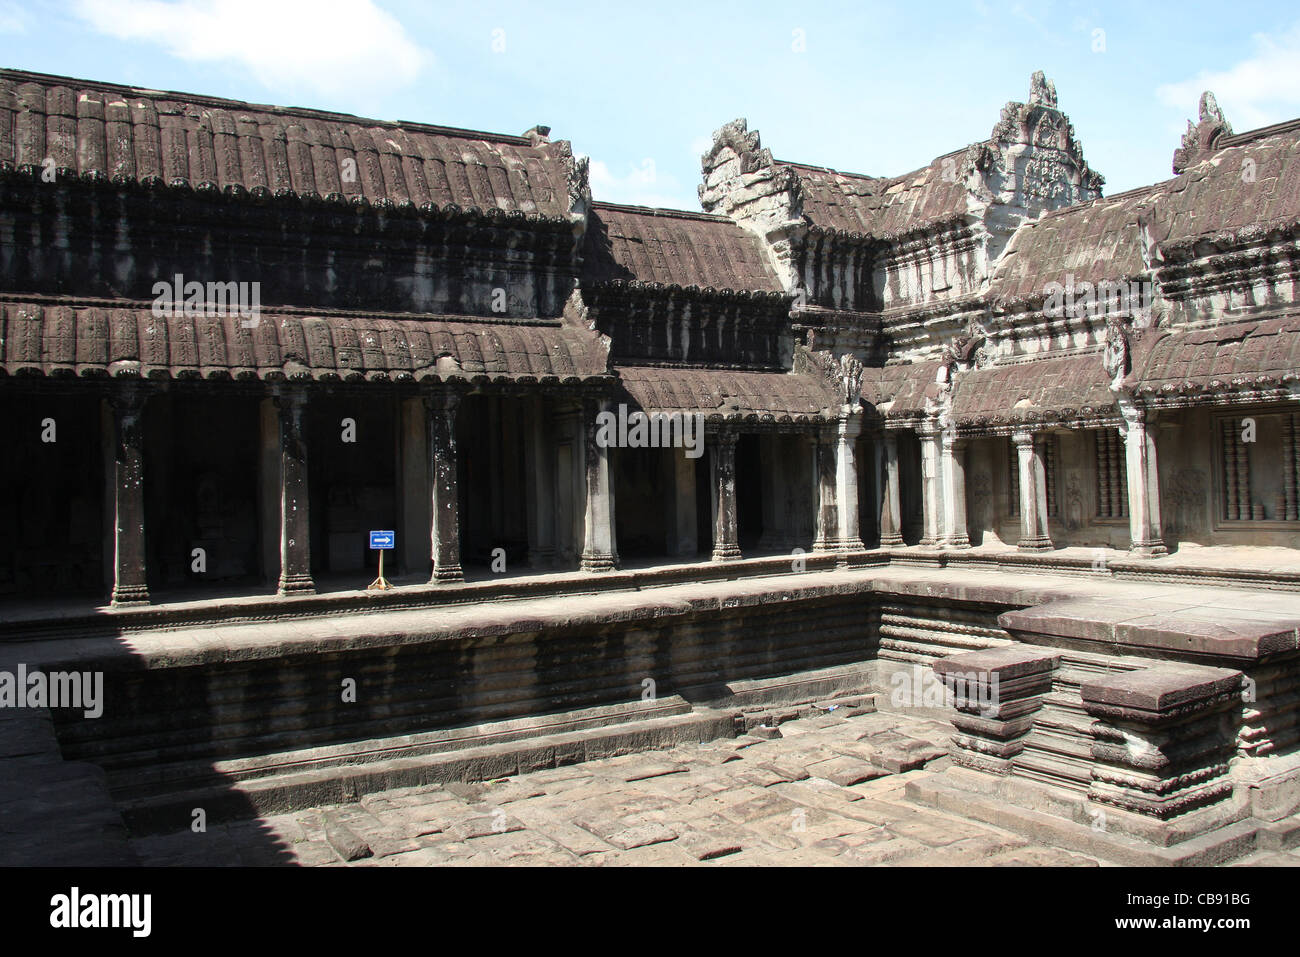 Patio interior en el templo de Angkor Wat, Camboya Foto de stock